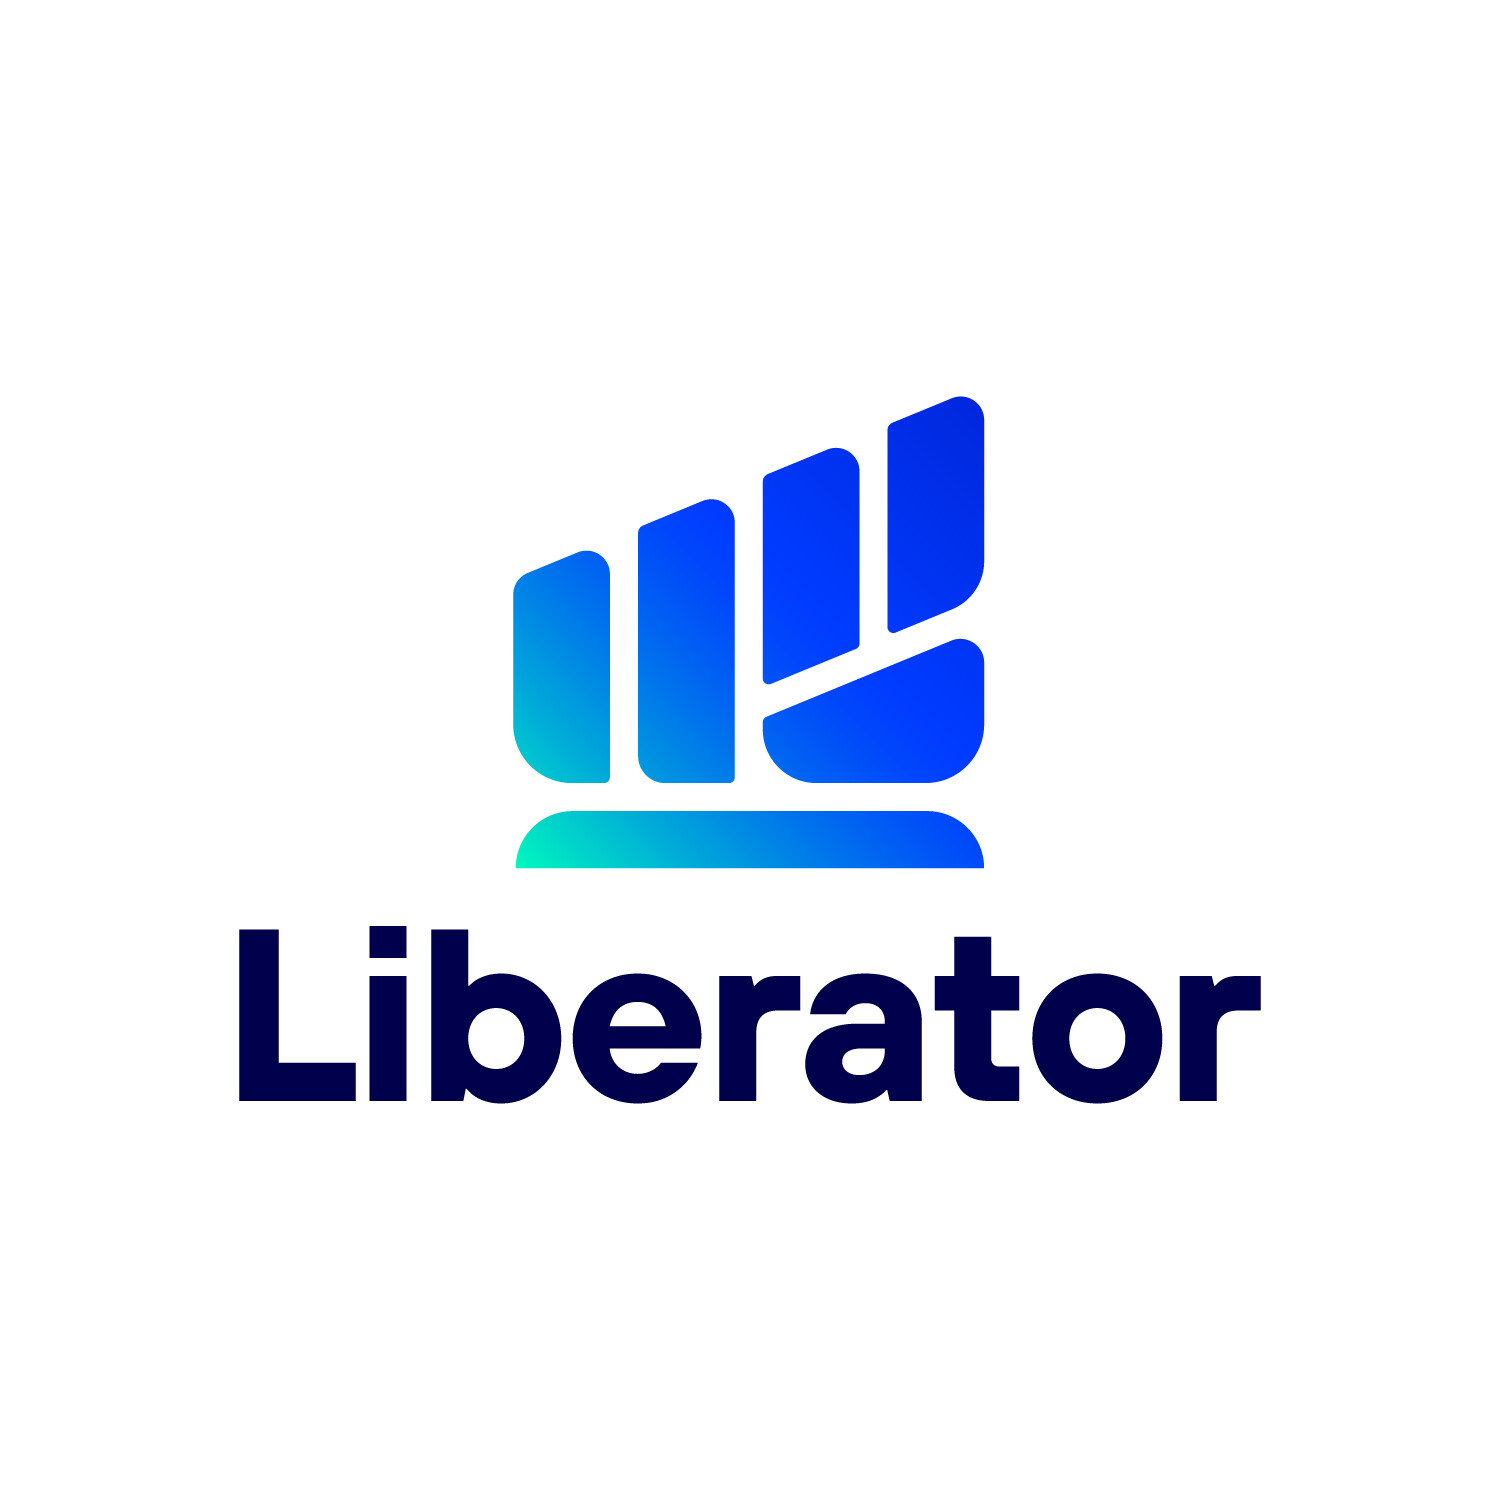 "บล.ลิเบอเรเตอร์" มาแรงฉุดไม่อยู่ ฉลองยอดดาวน์โหลดแอปฯ ทะลุ 200,000 !! ชาว Liberator เตรียมรับสิทธิ์จองซื้อหุ้น IPO เร็ว ๆ นี้